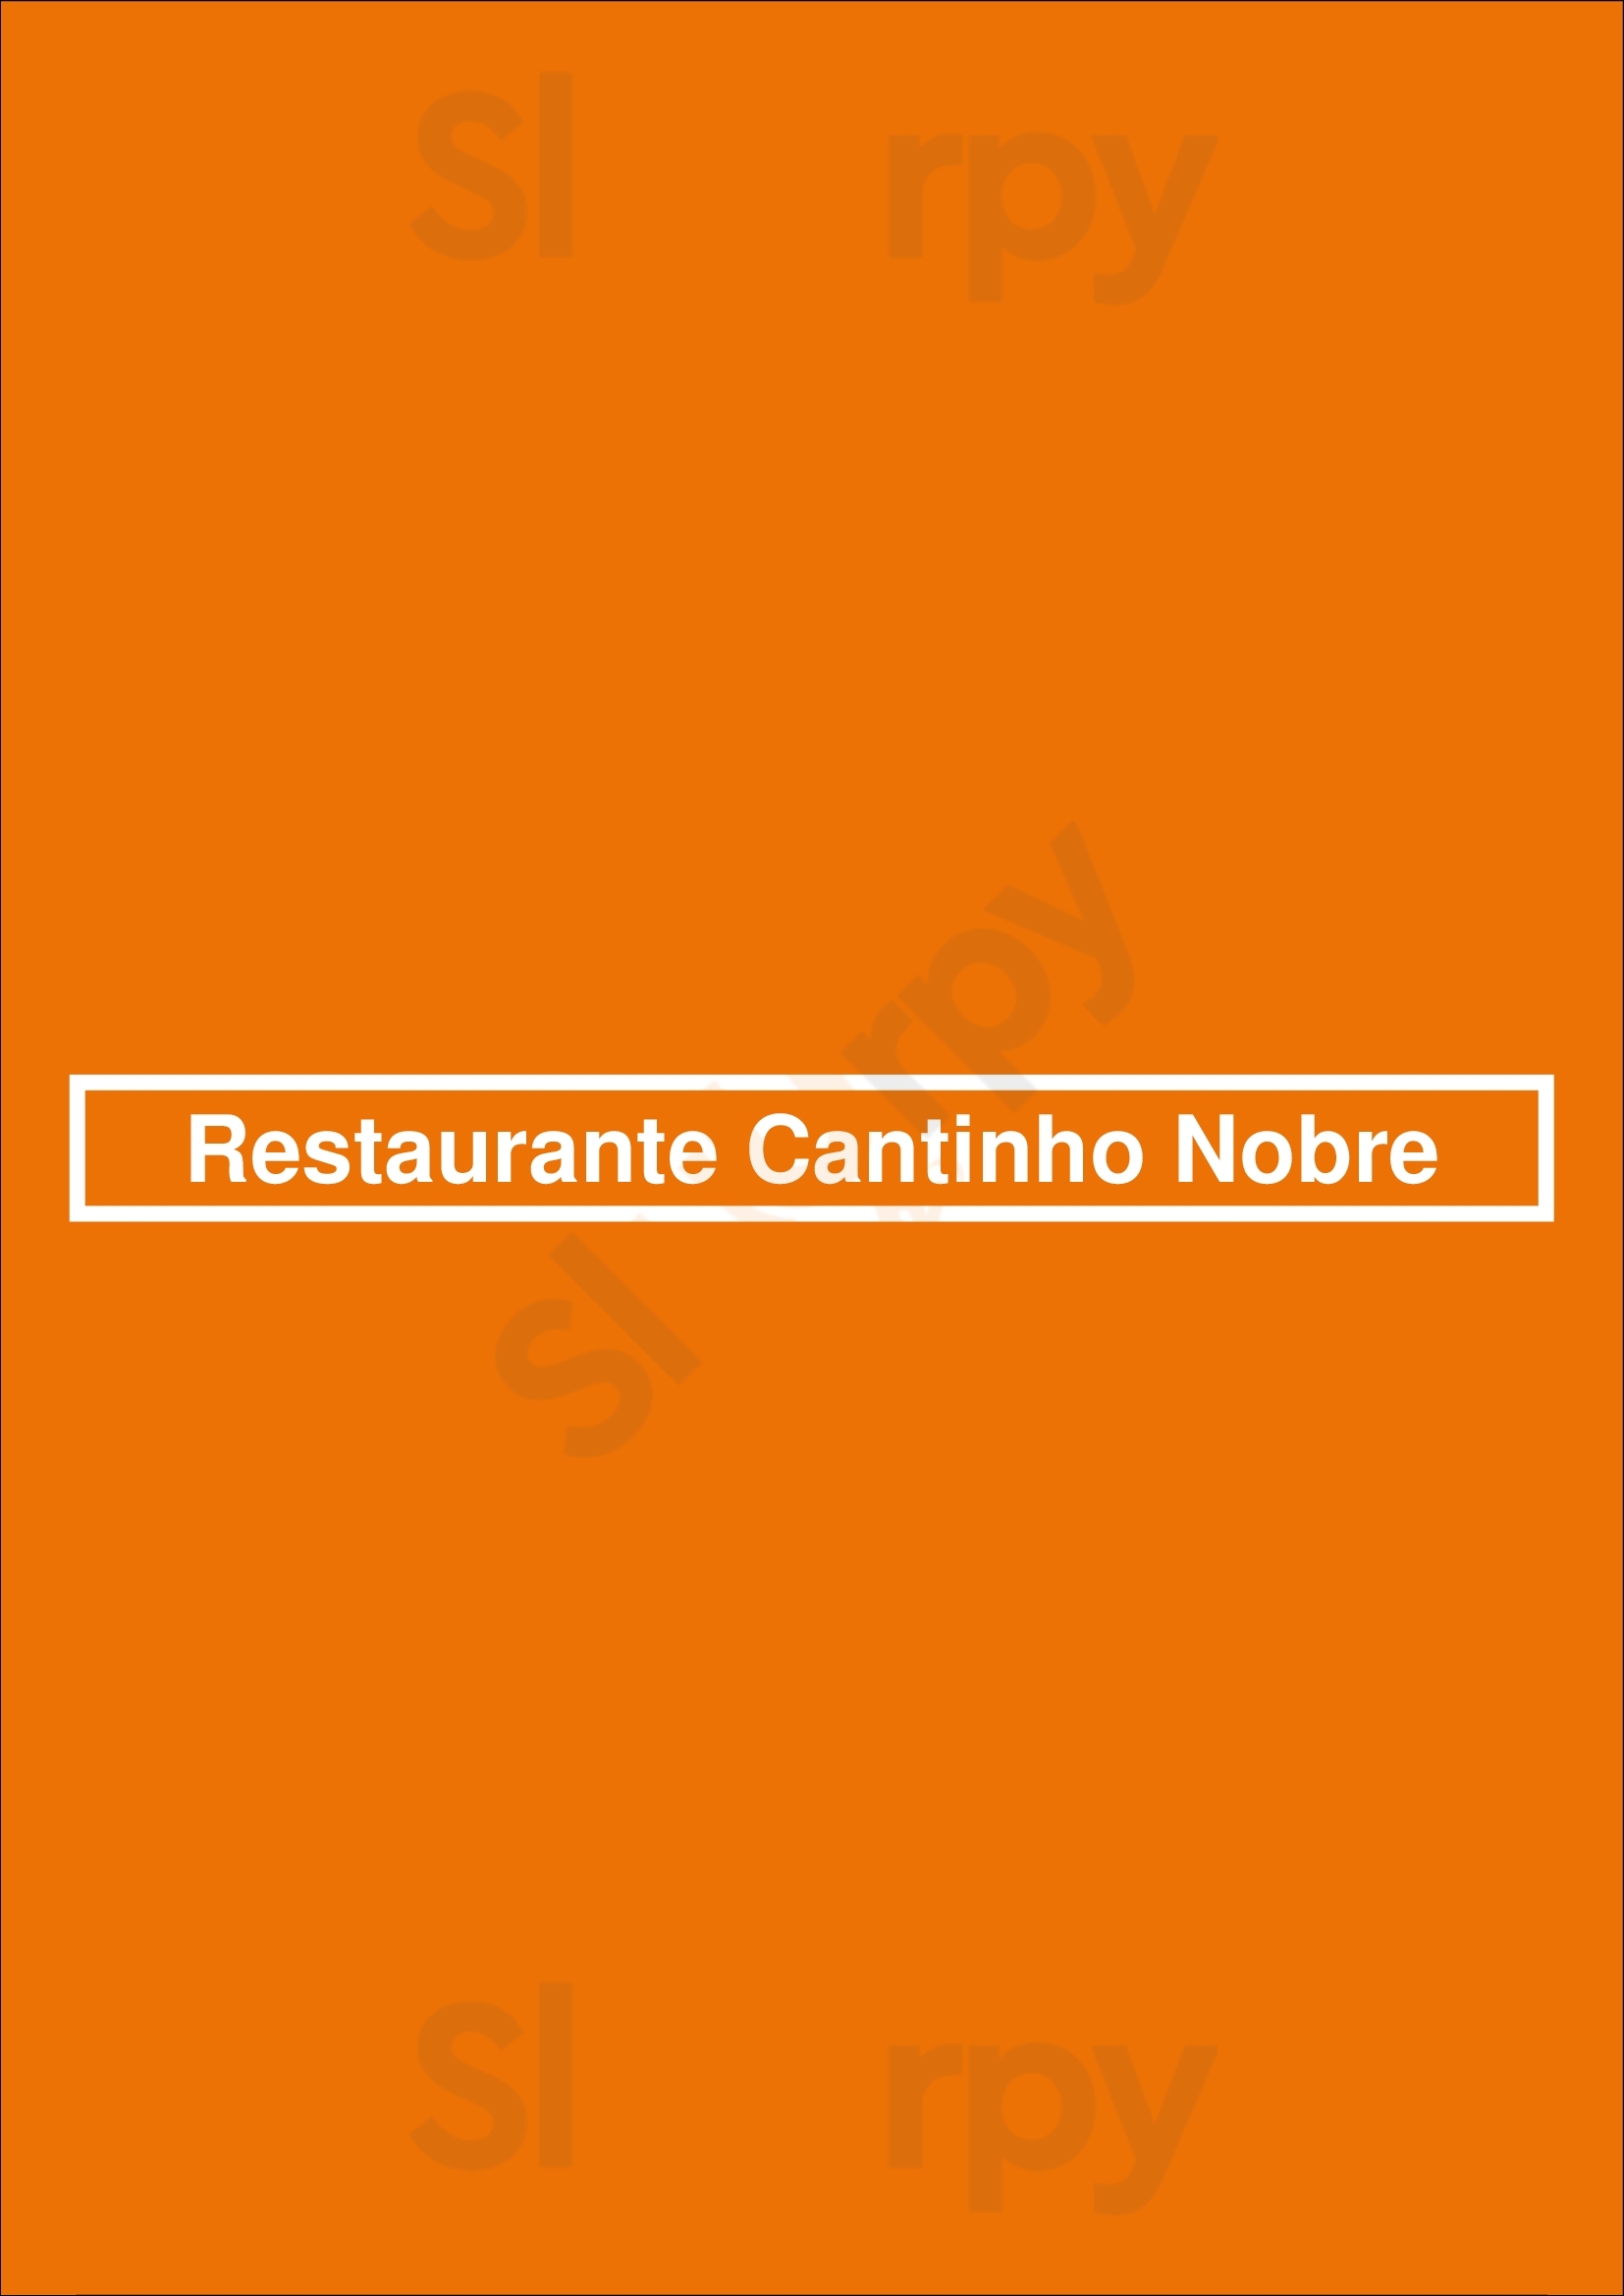 Restaurante Cantinho Nobre Santa Maria da Feira Menu - 1